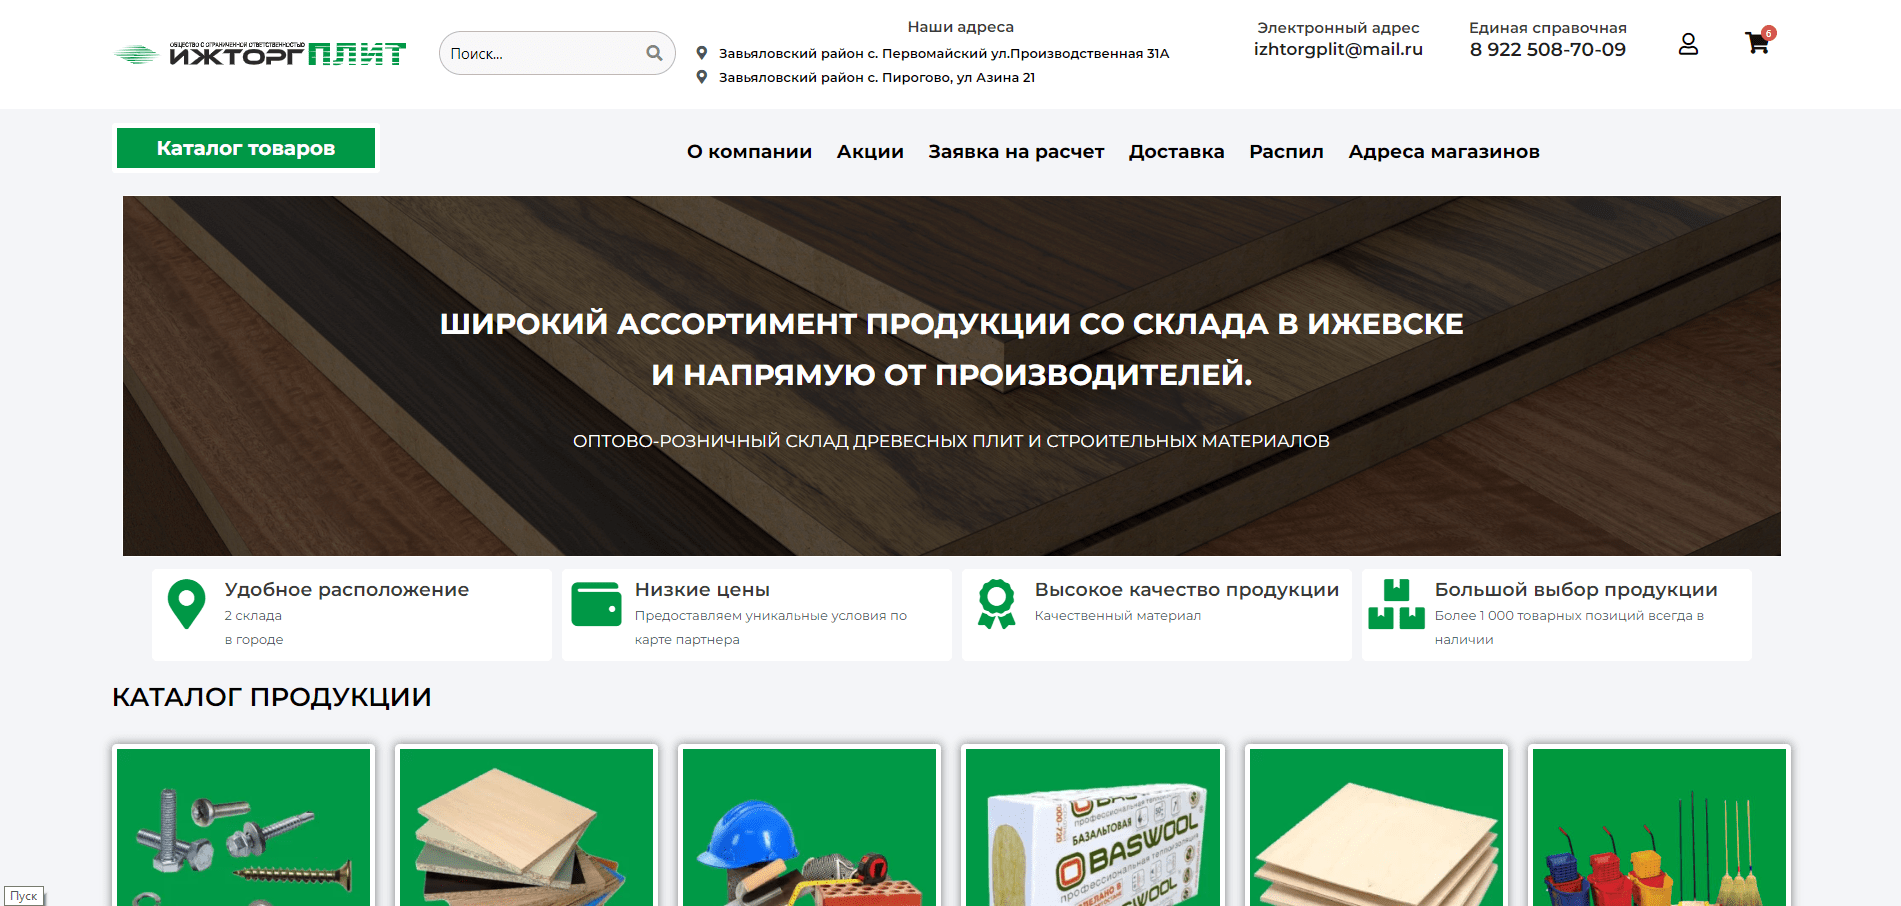 Ижторгплит-интернет-магазин